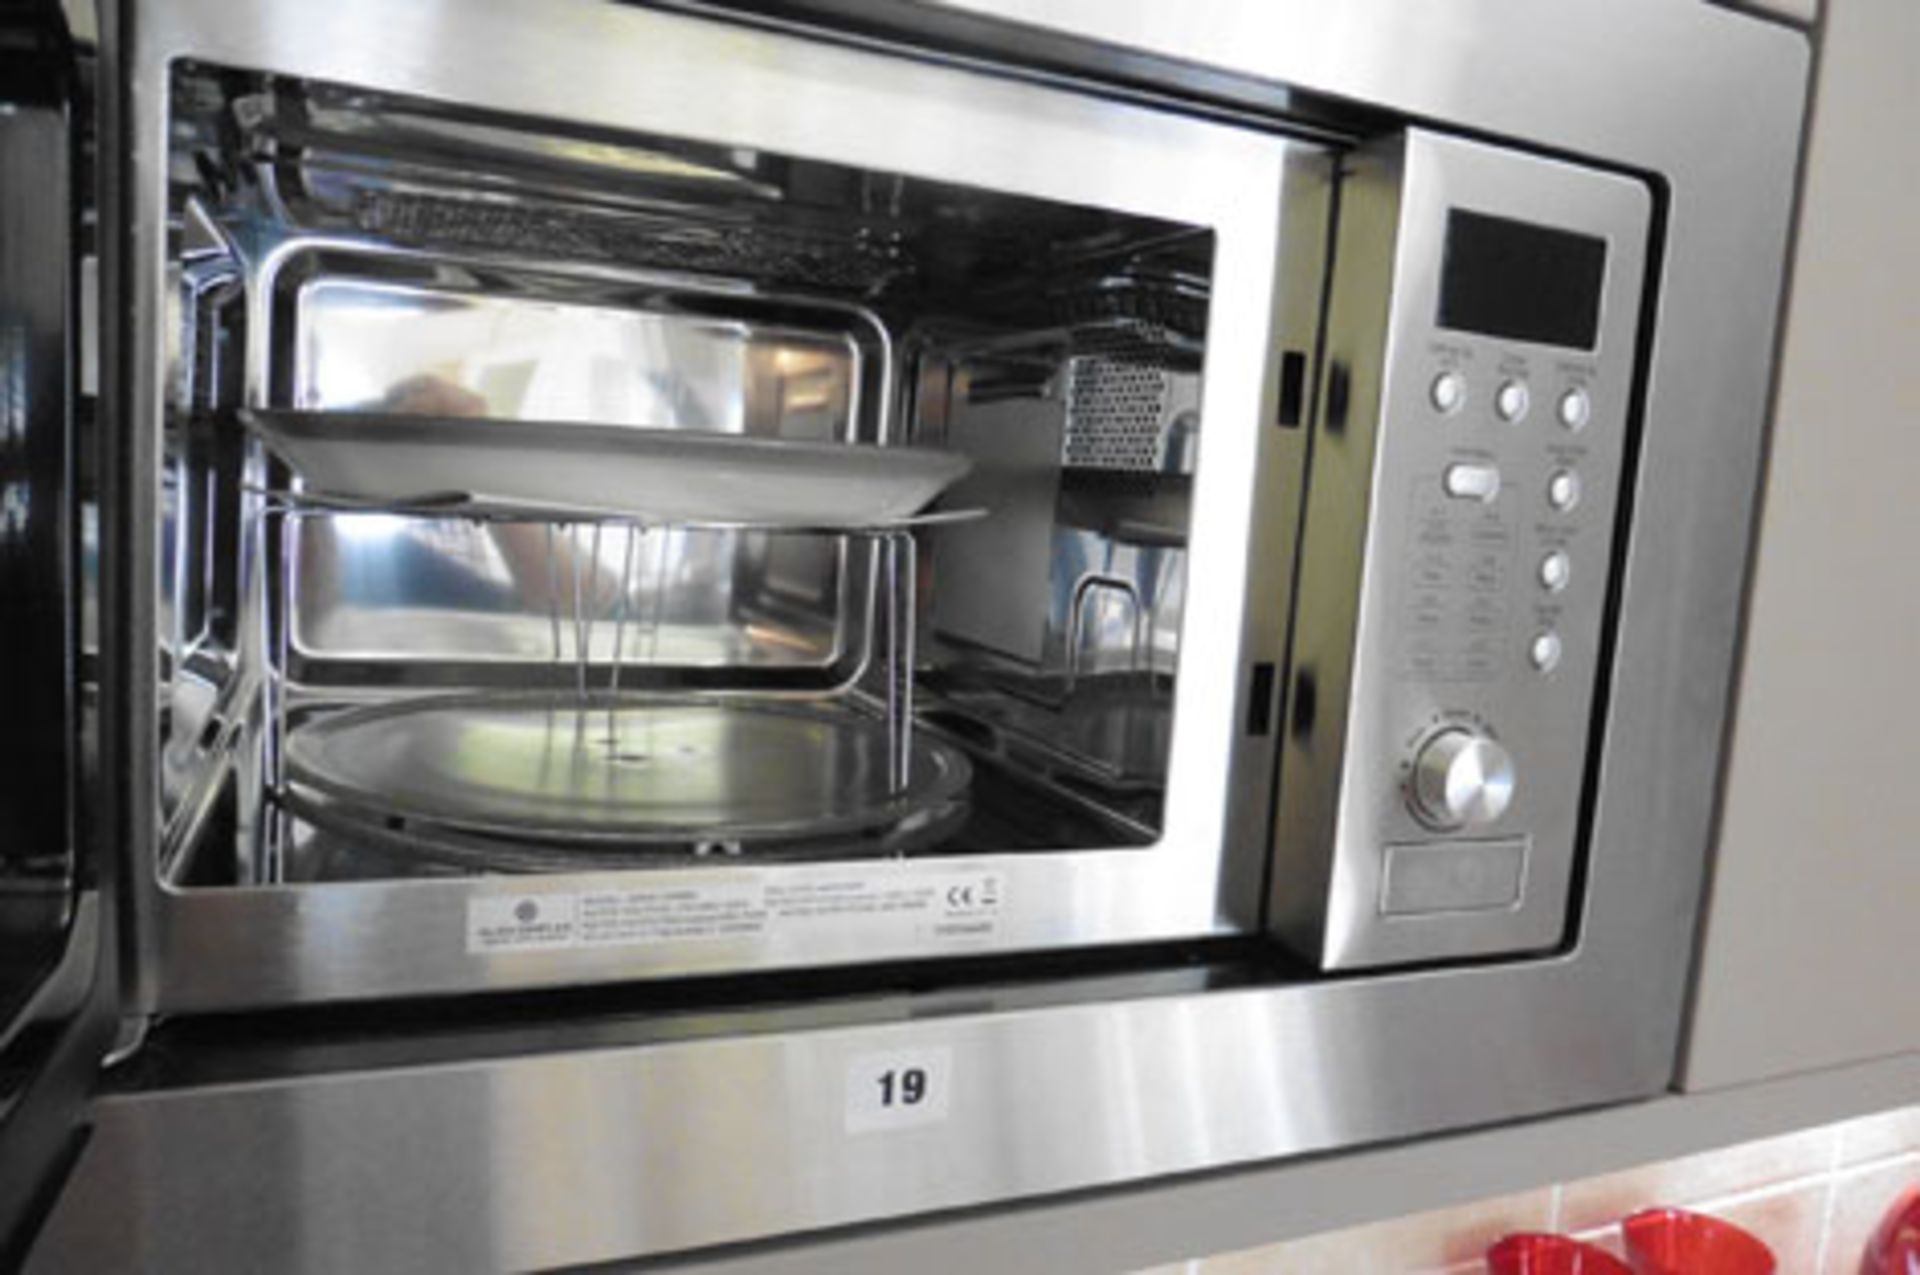 Glen Dimplex built in type combination microwave oven Model: GDHA UWM600 - Image 2 of 3